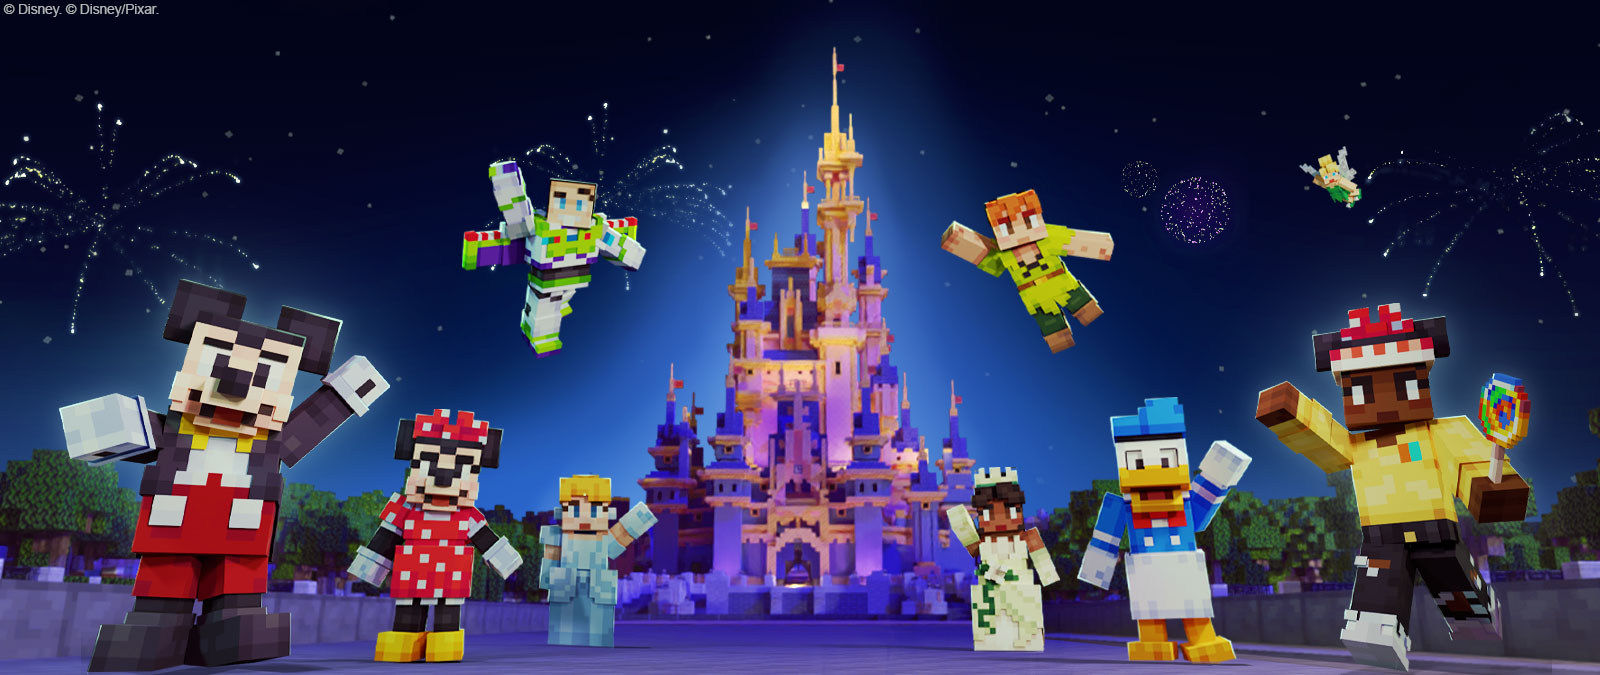 Mikke Mus, Minnie Mouse, Buzz Lightyear, Askepott, Peter Pan, Tiana, Donald Duck, Tinkerbell og en annen karakter i Minecraft-stil foran Disney-slottet